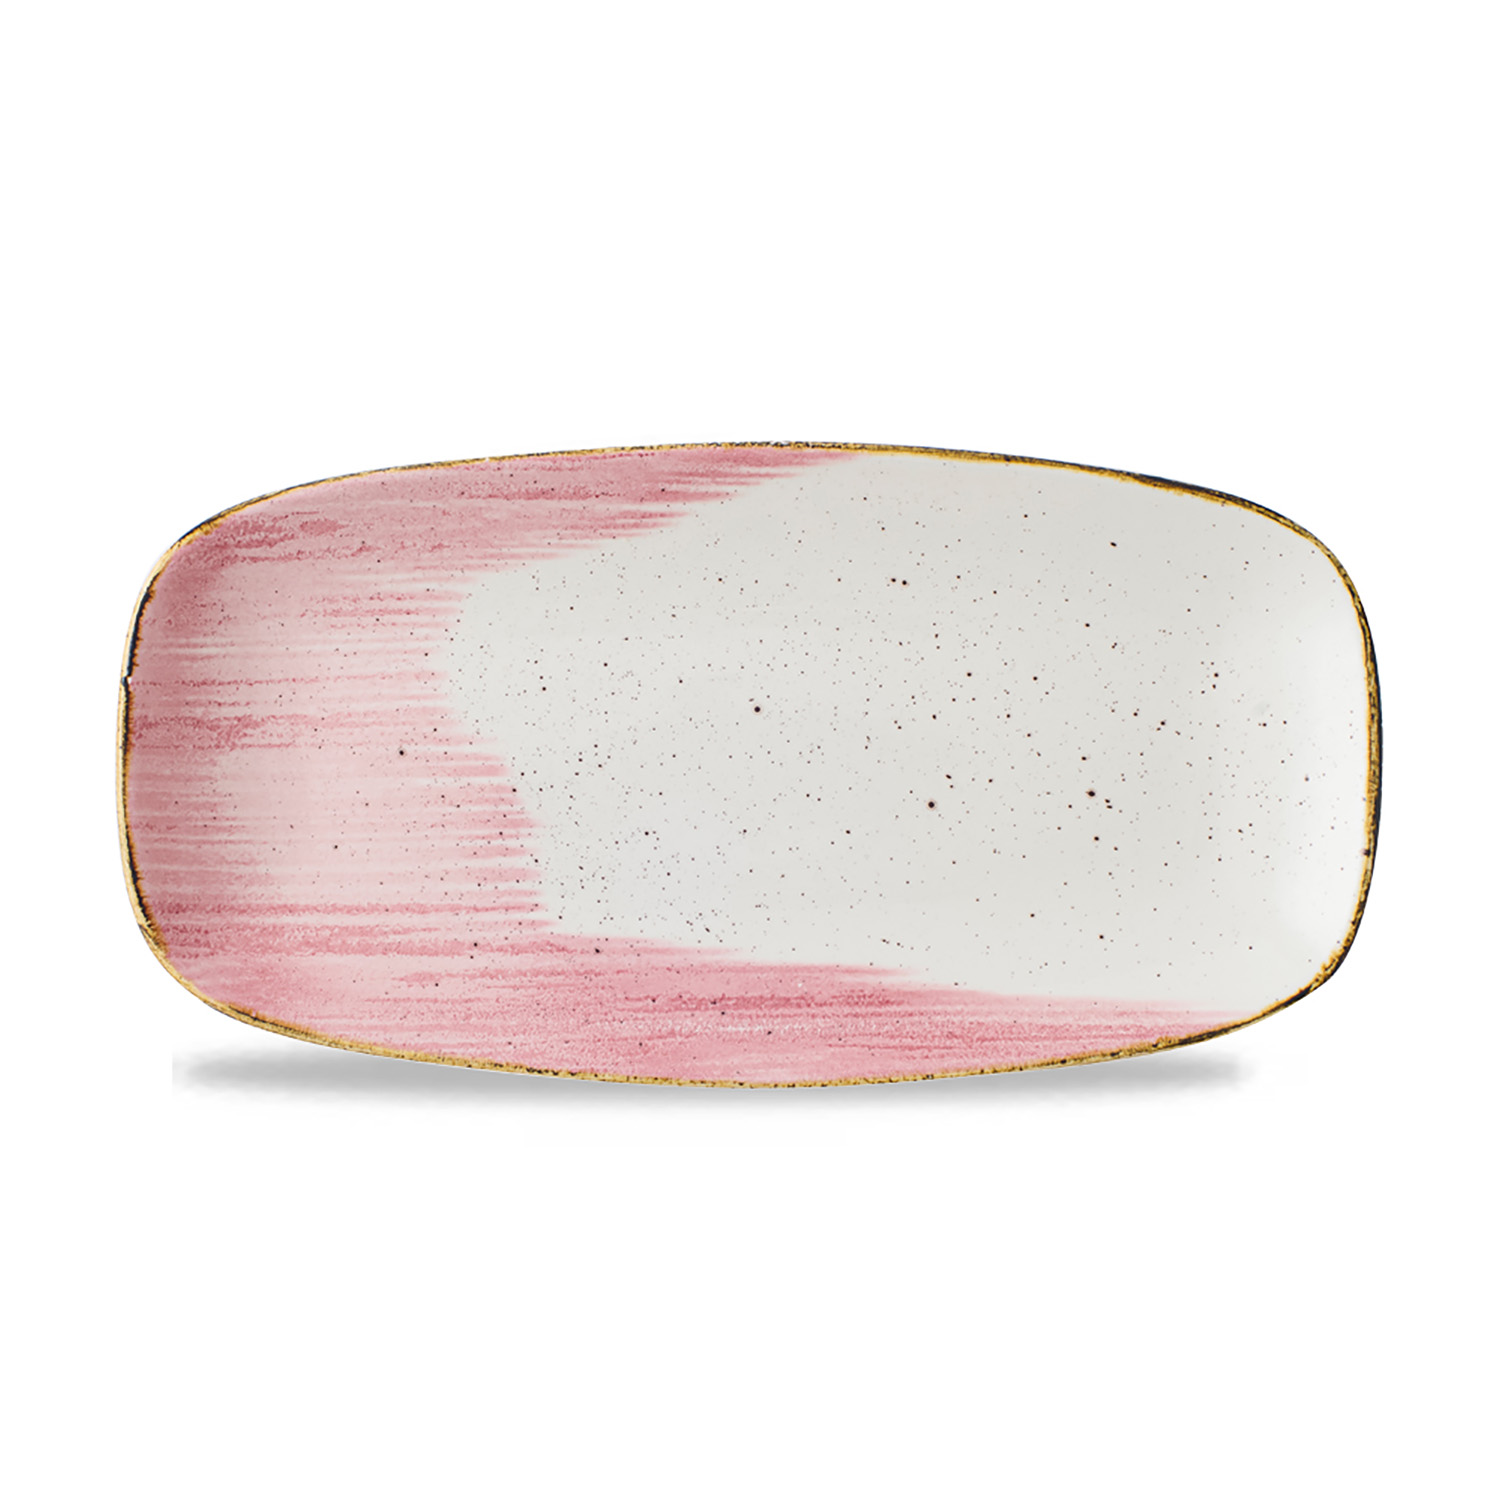 Chefs Oblong Platte No. 3, 29,8 x 15,3 cm, Stonecast Accents Petal Pink